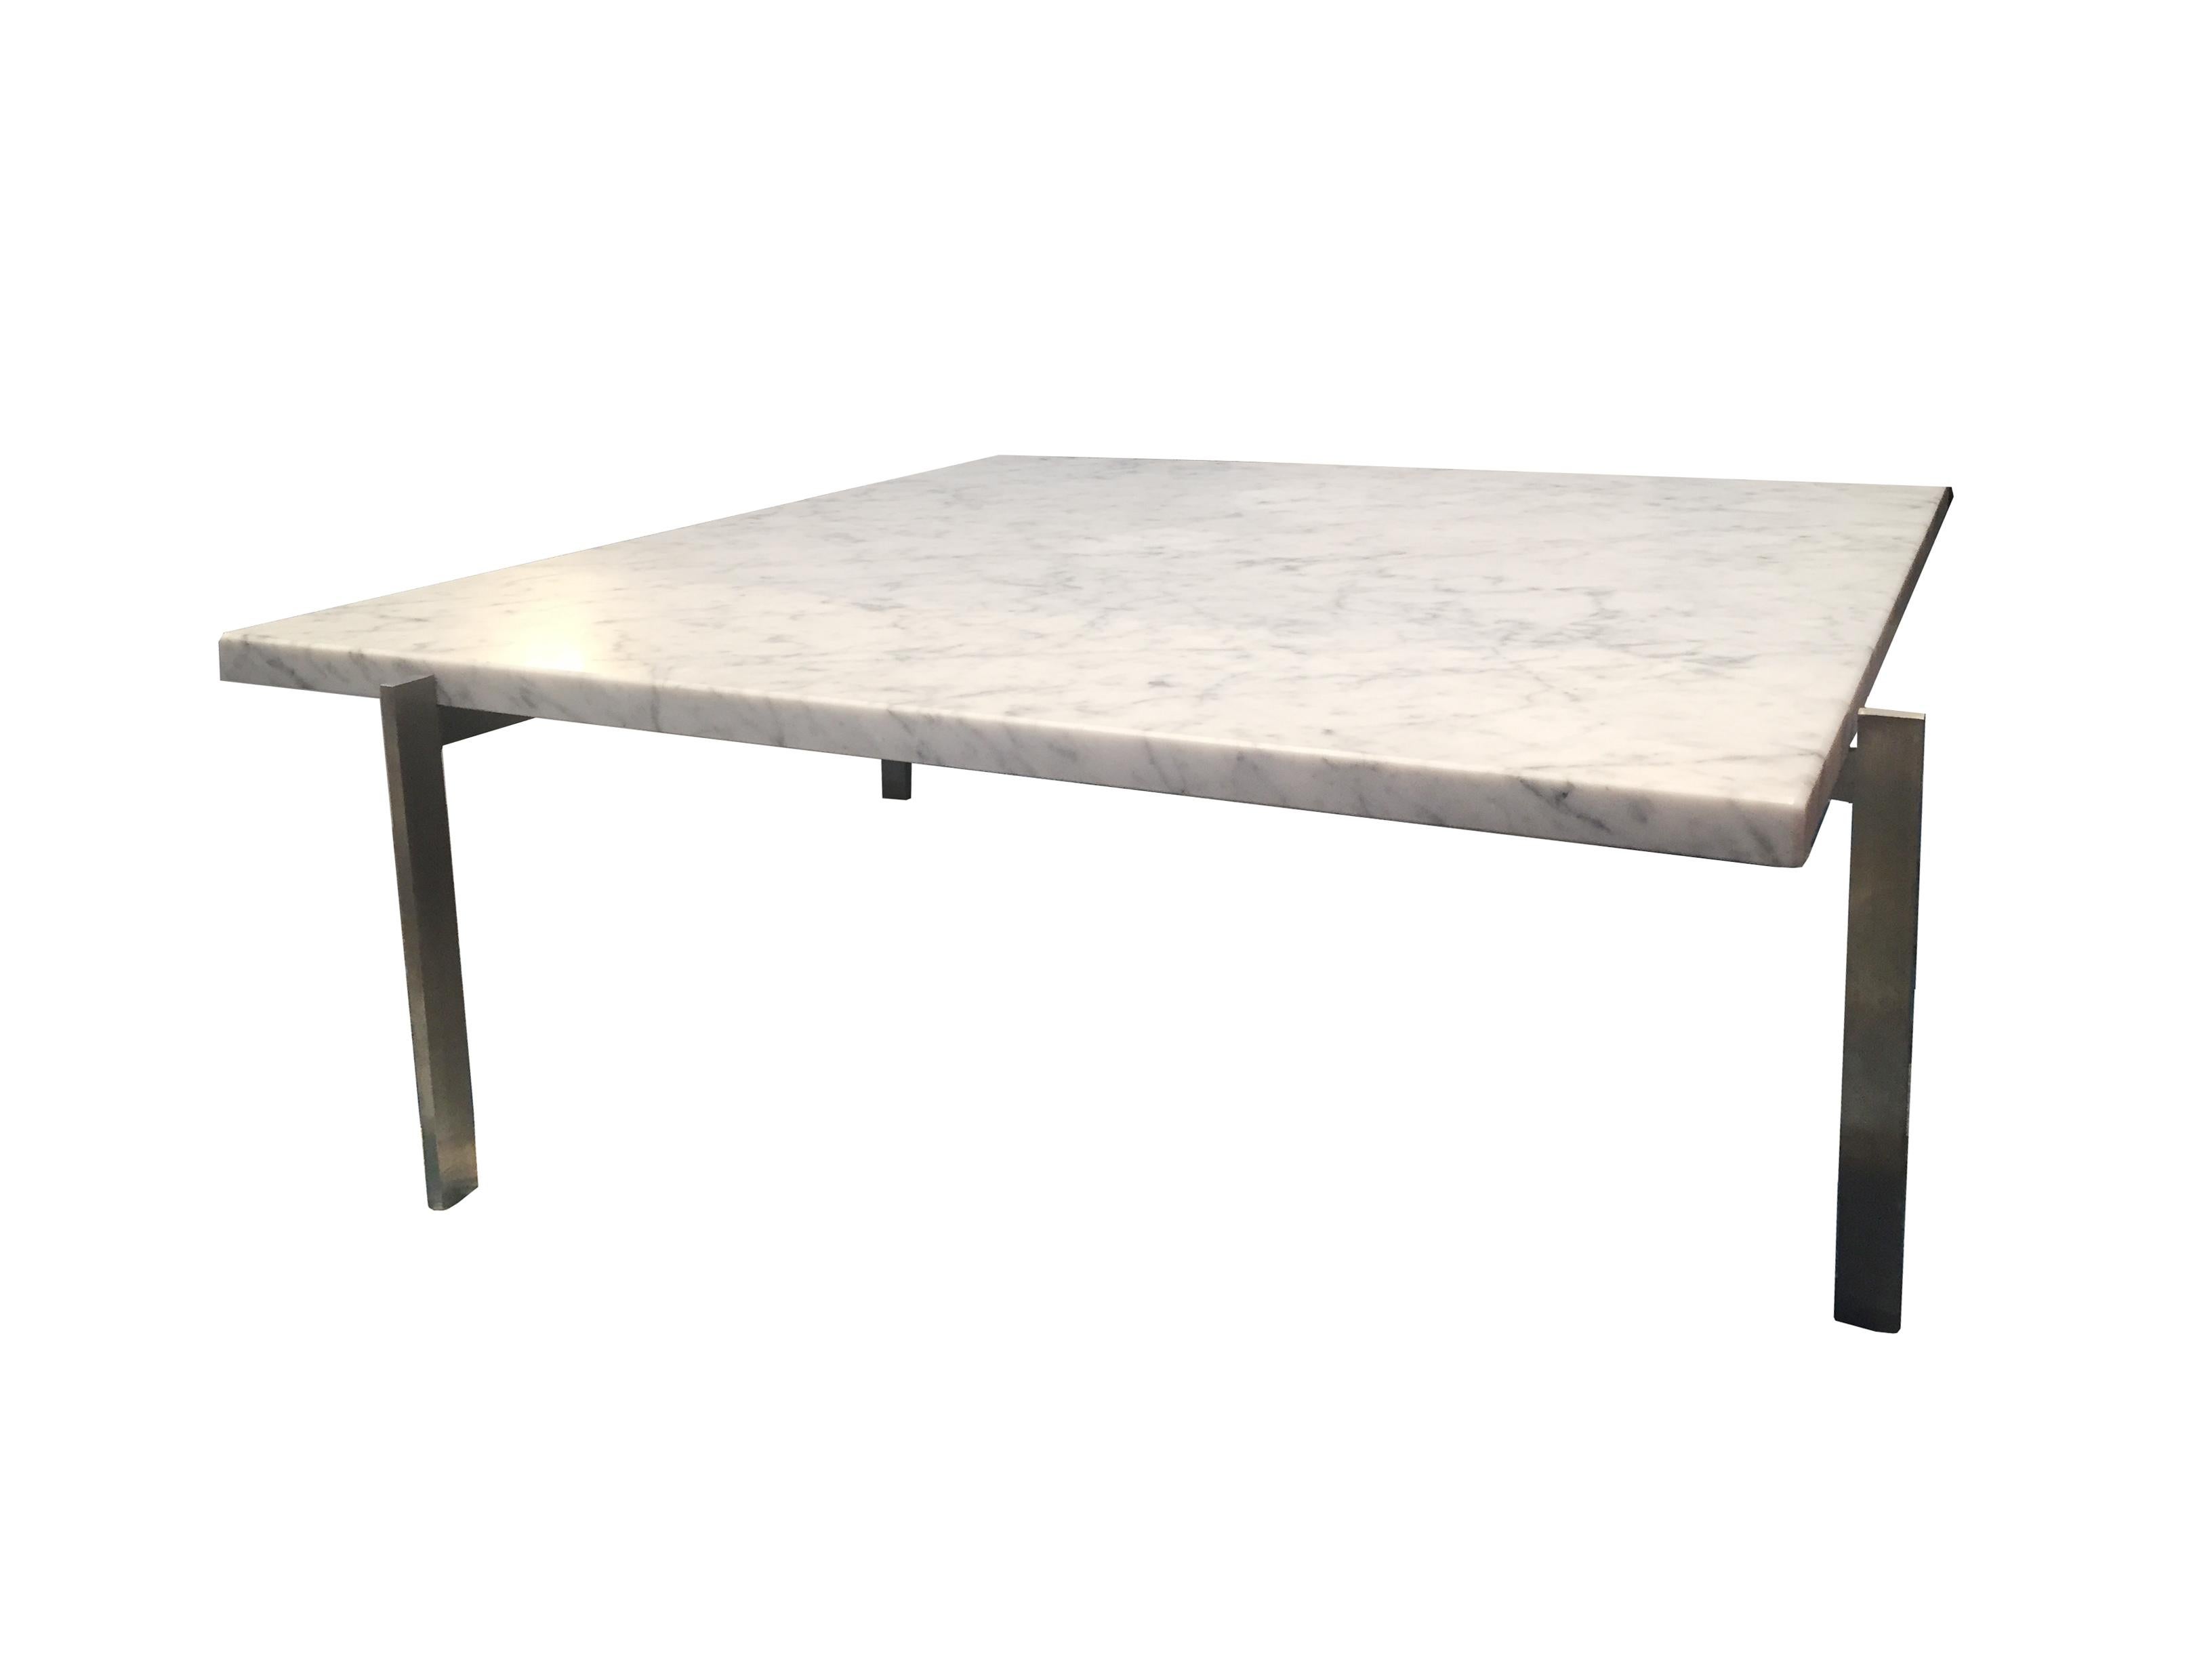 Der niedrige Tisch PK 61, den Kjaerholm als Ergänzung zum Sessel PK 22 entworfen hat, ist einer seiner elementarsten Entwürfe. Der Tisch besteht aus vier geschweißten Stahlelementen, die mit Maschinenschrauben verbunden sind, und einer Marmorplatte.